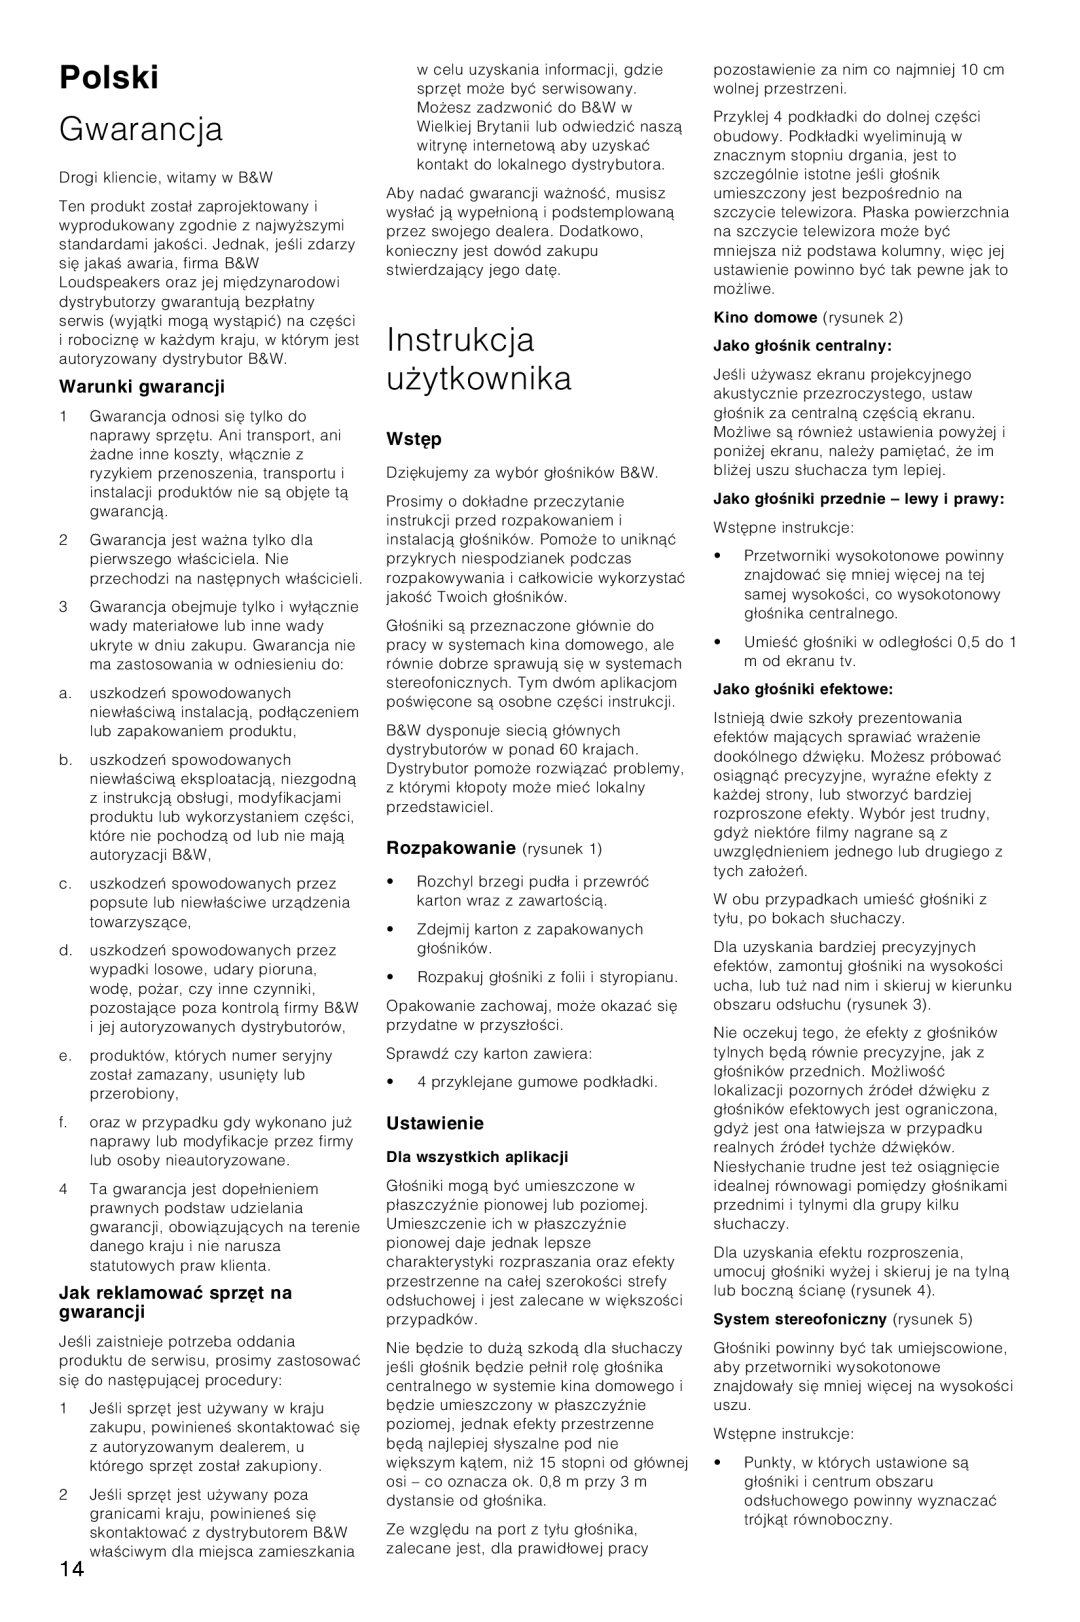 Bowers & Wilkins LCR3 Polski, Gwarancja, Instrukcja uÃytkownika, Warunki gwarancji, Jak reklamowaπ sprz∆t na gwarancji 